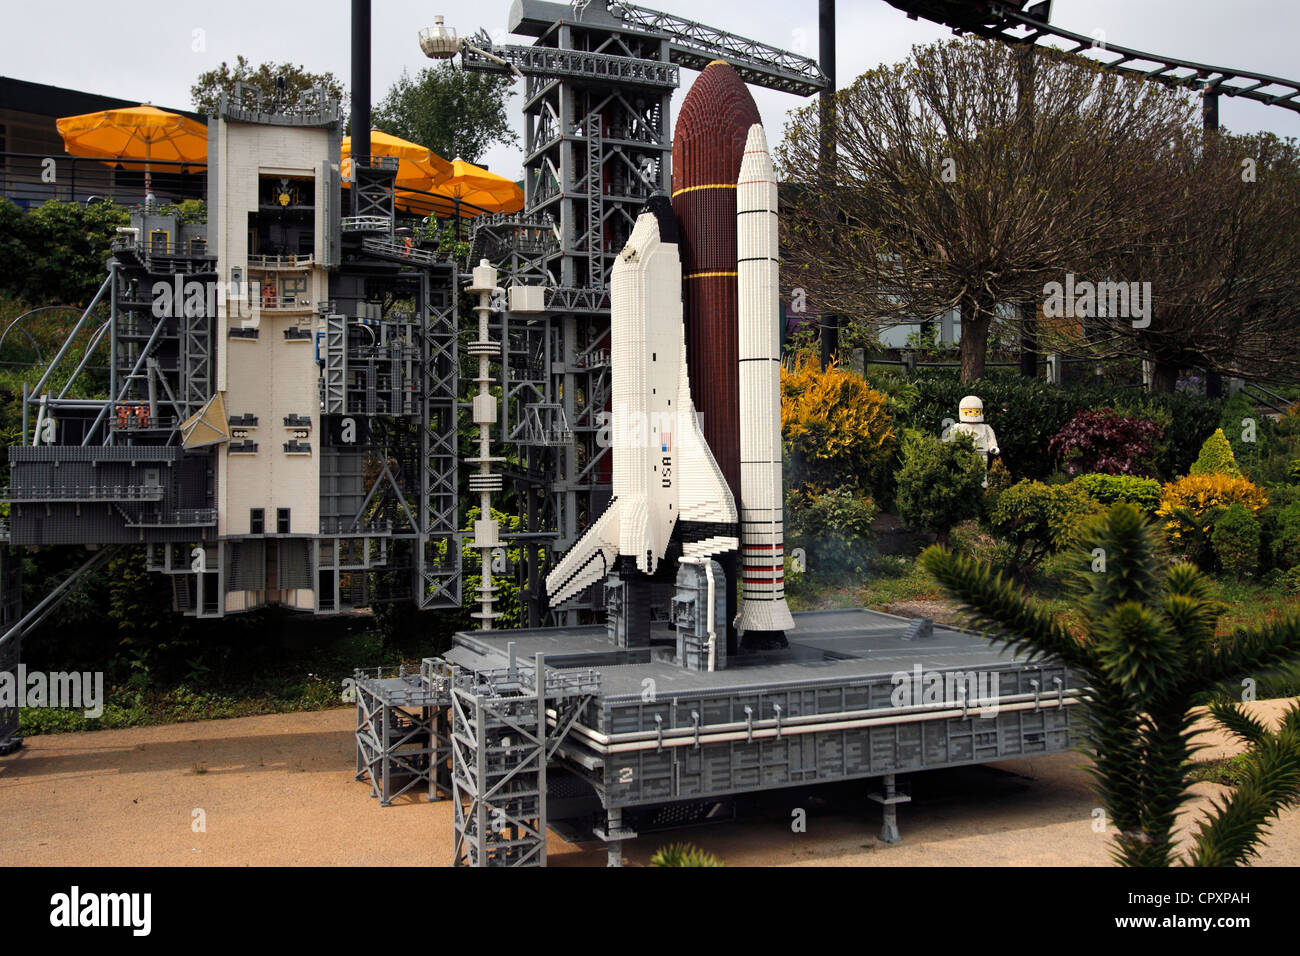 Legoland - Cape Canaveral - Kennedy Space Center lancio Shuttle - fatta di mattoncini Lego Foto Stock